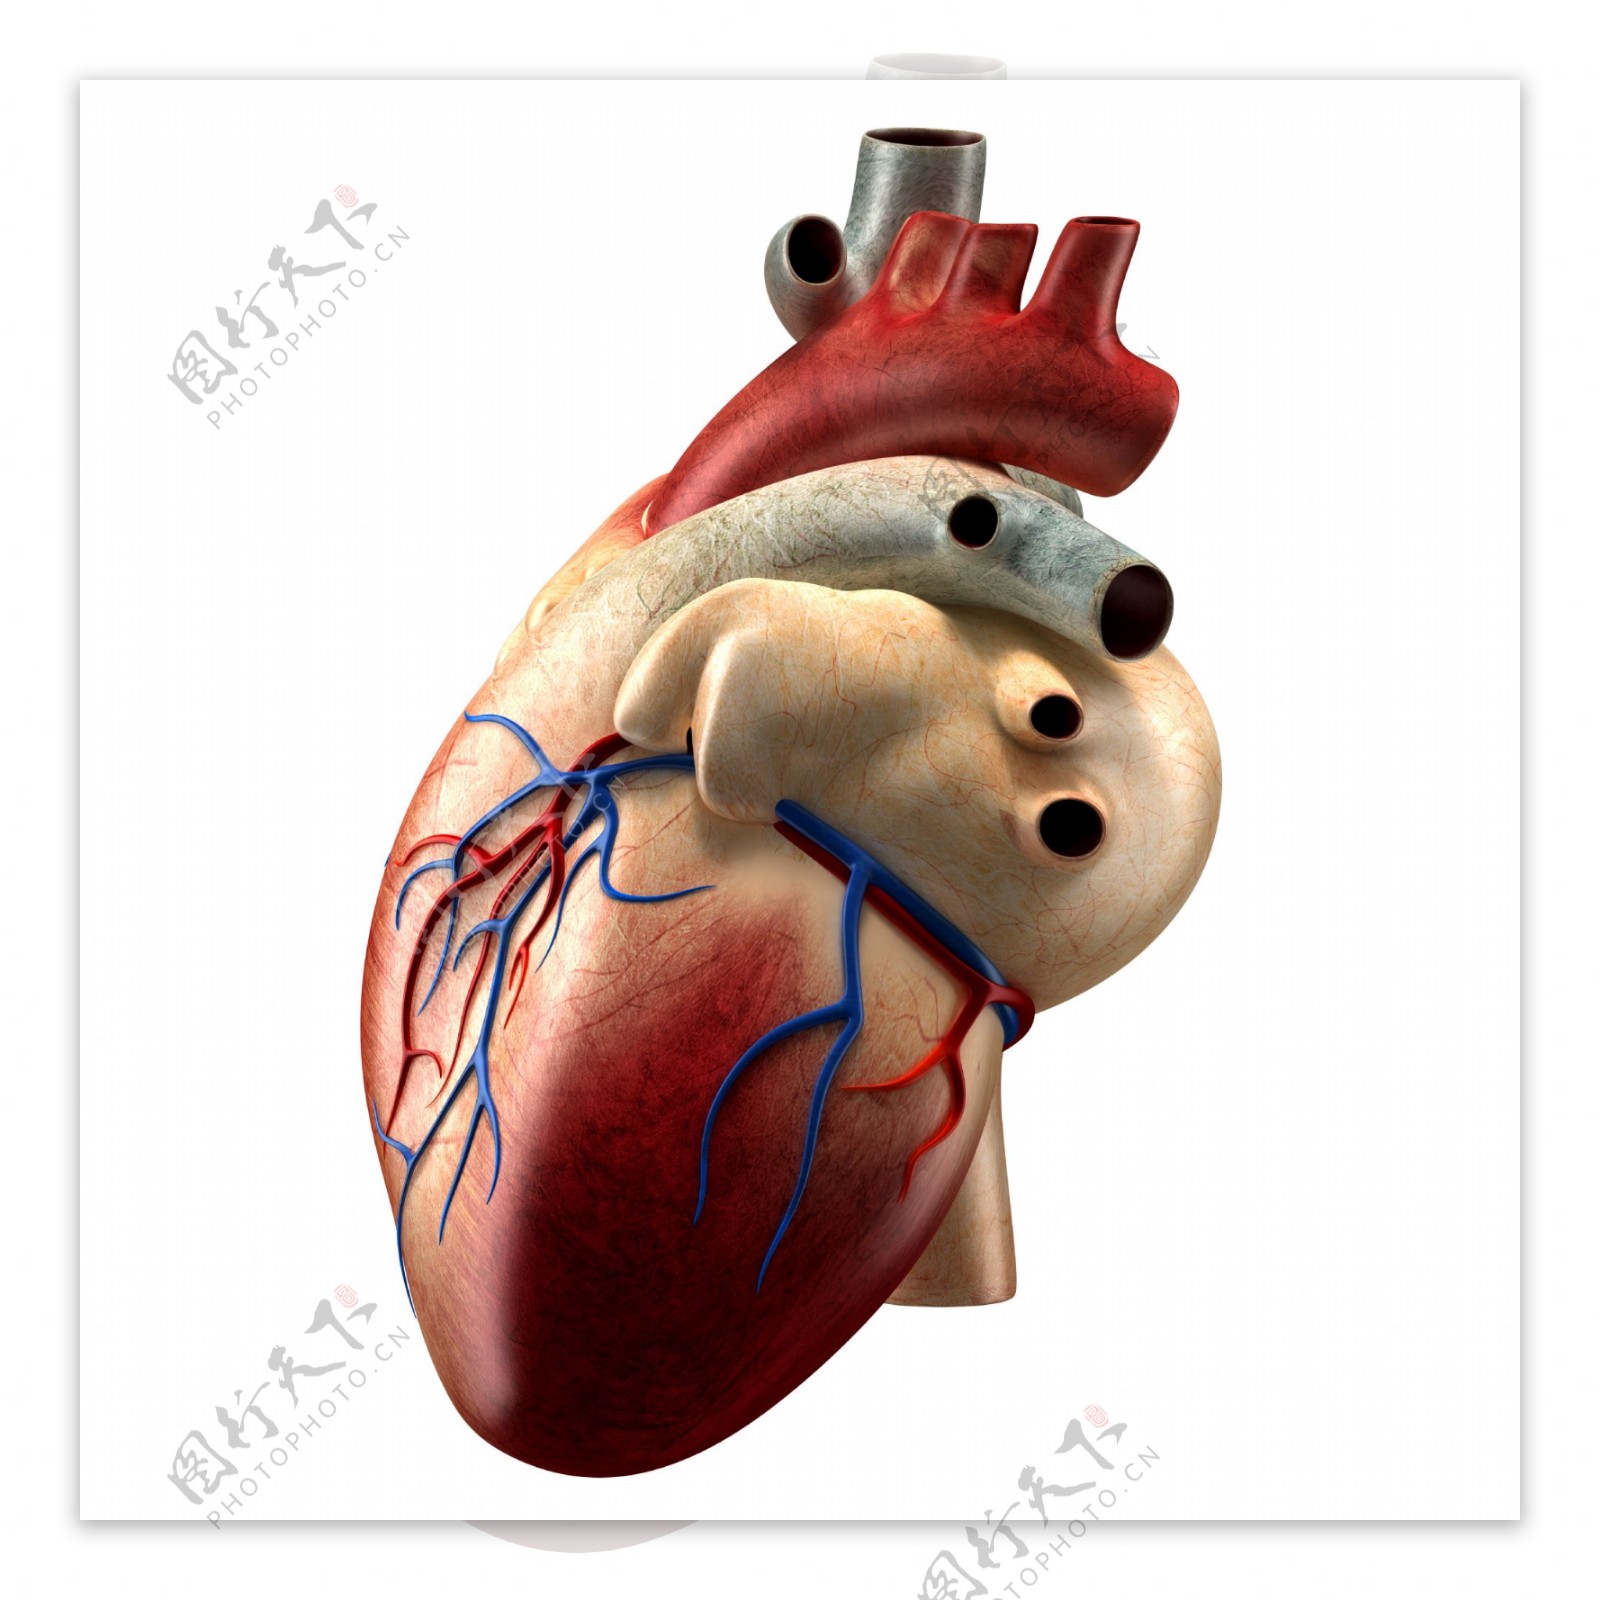 心脏和解剖横截面3D模型 - TurboSquid 1424032